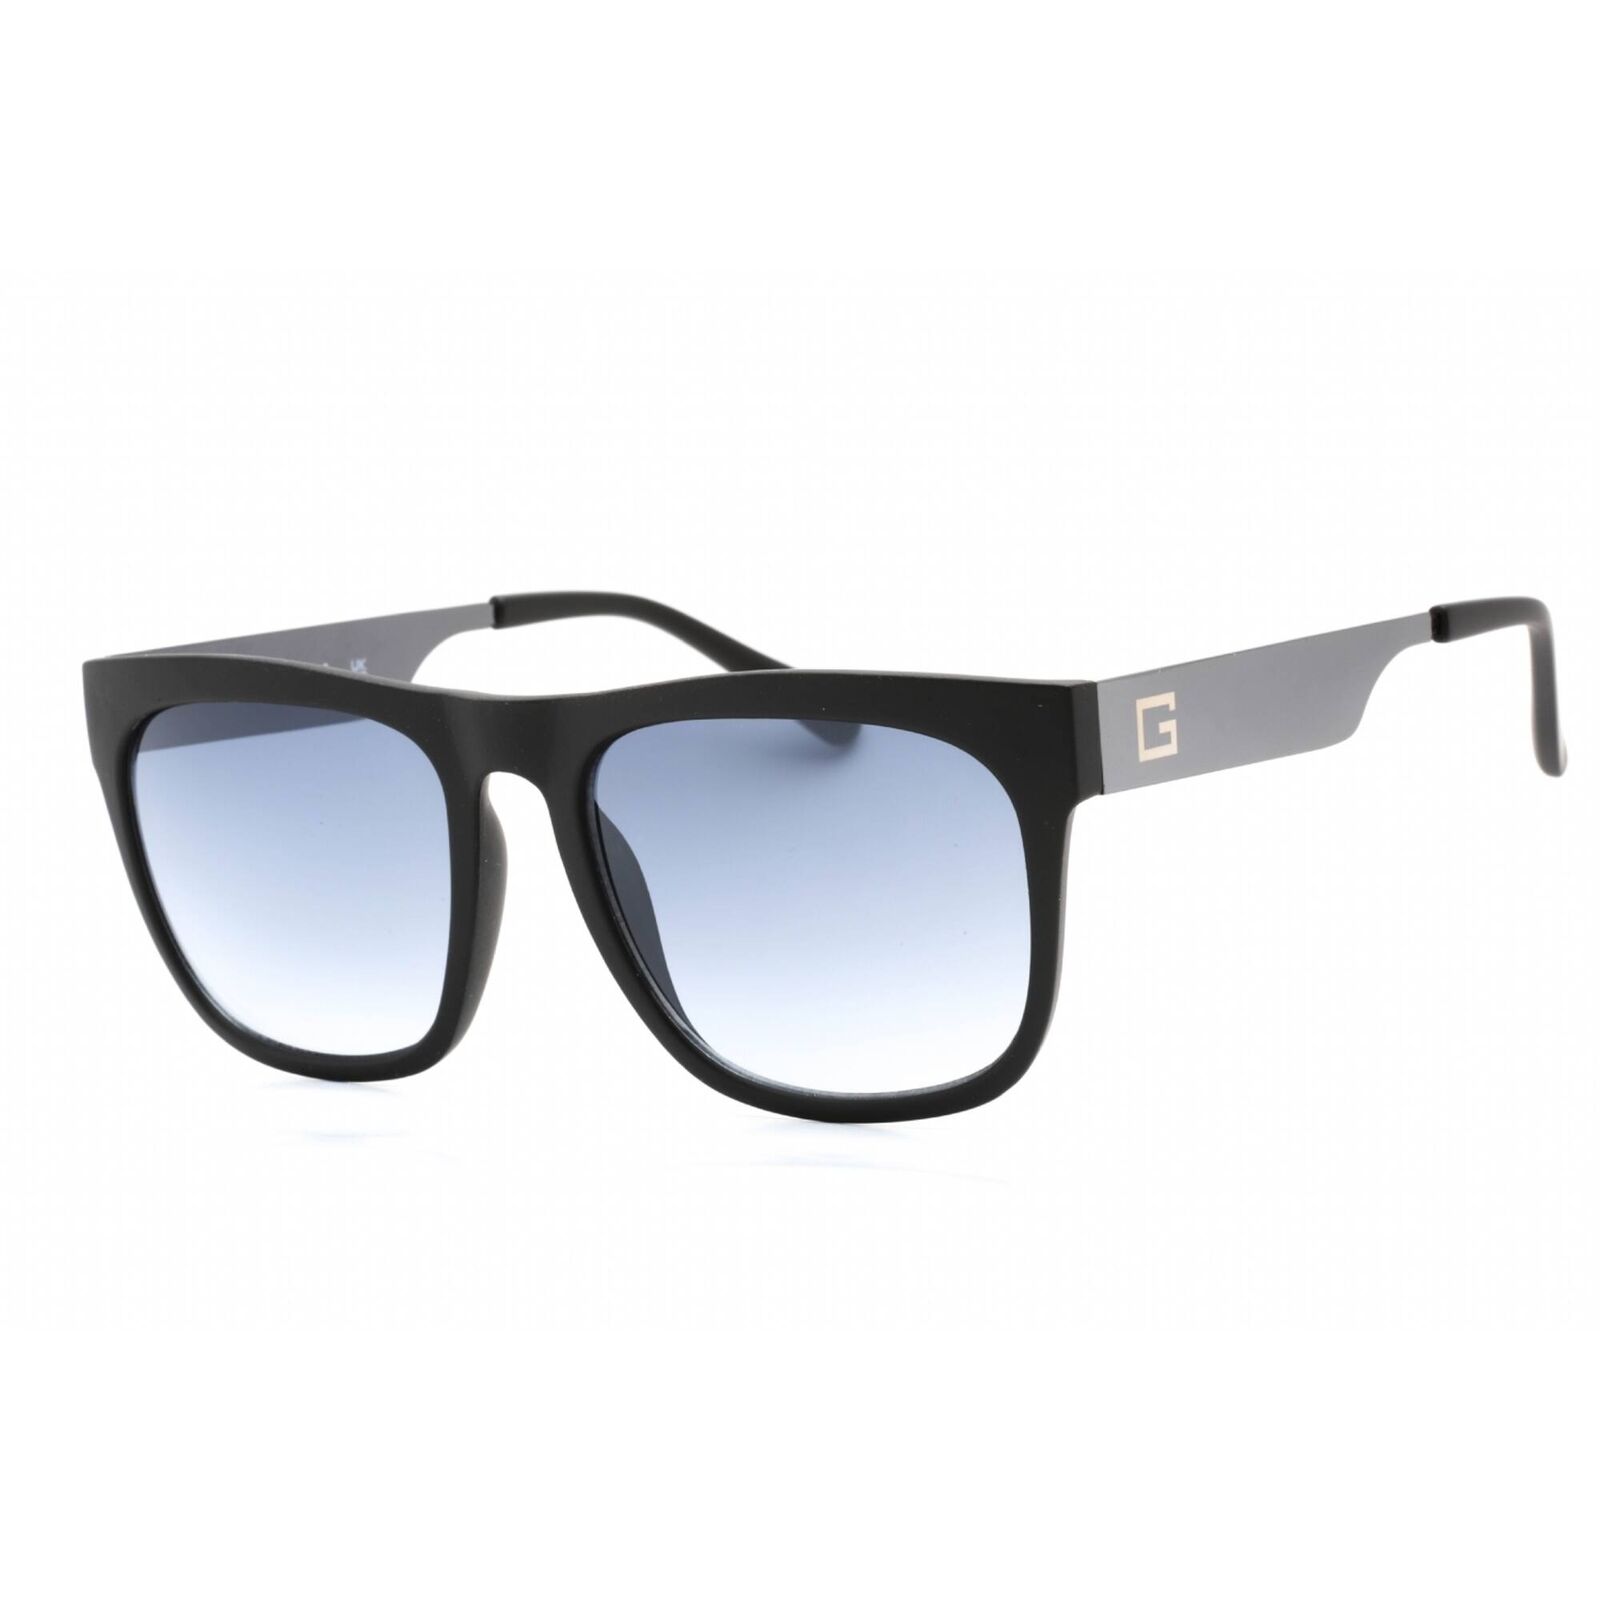 Guess Factory Men's Sunglasses Matte Black Frame Gradient Blue Lens GF0188 02W